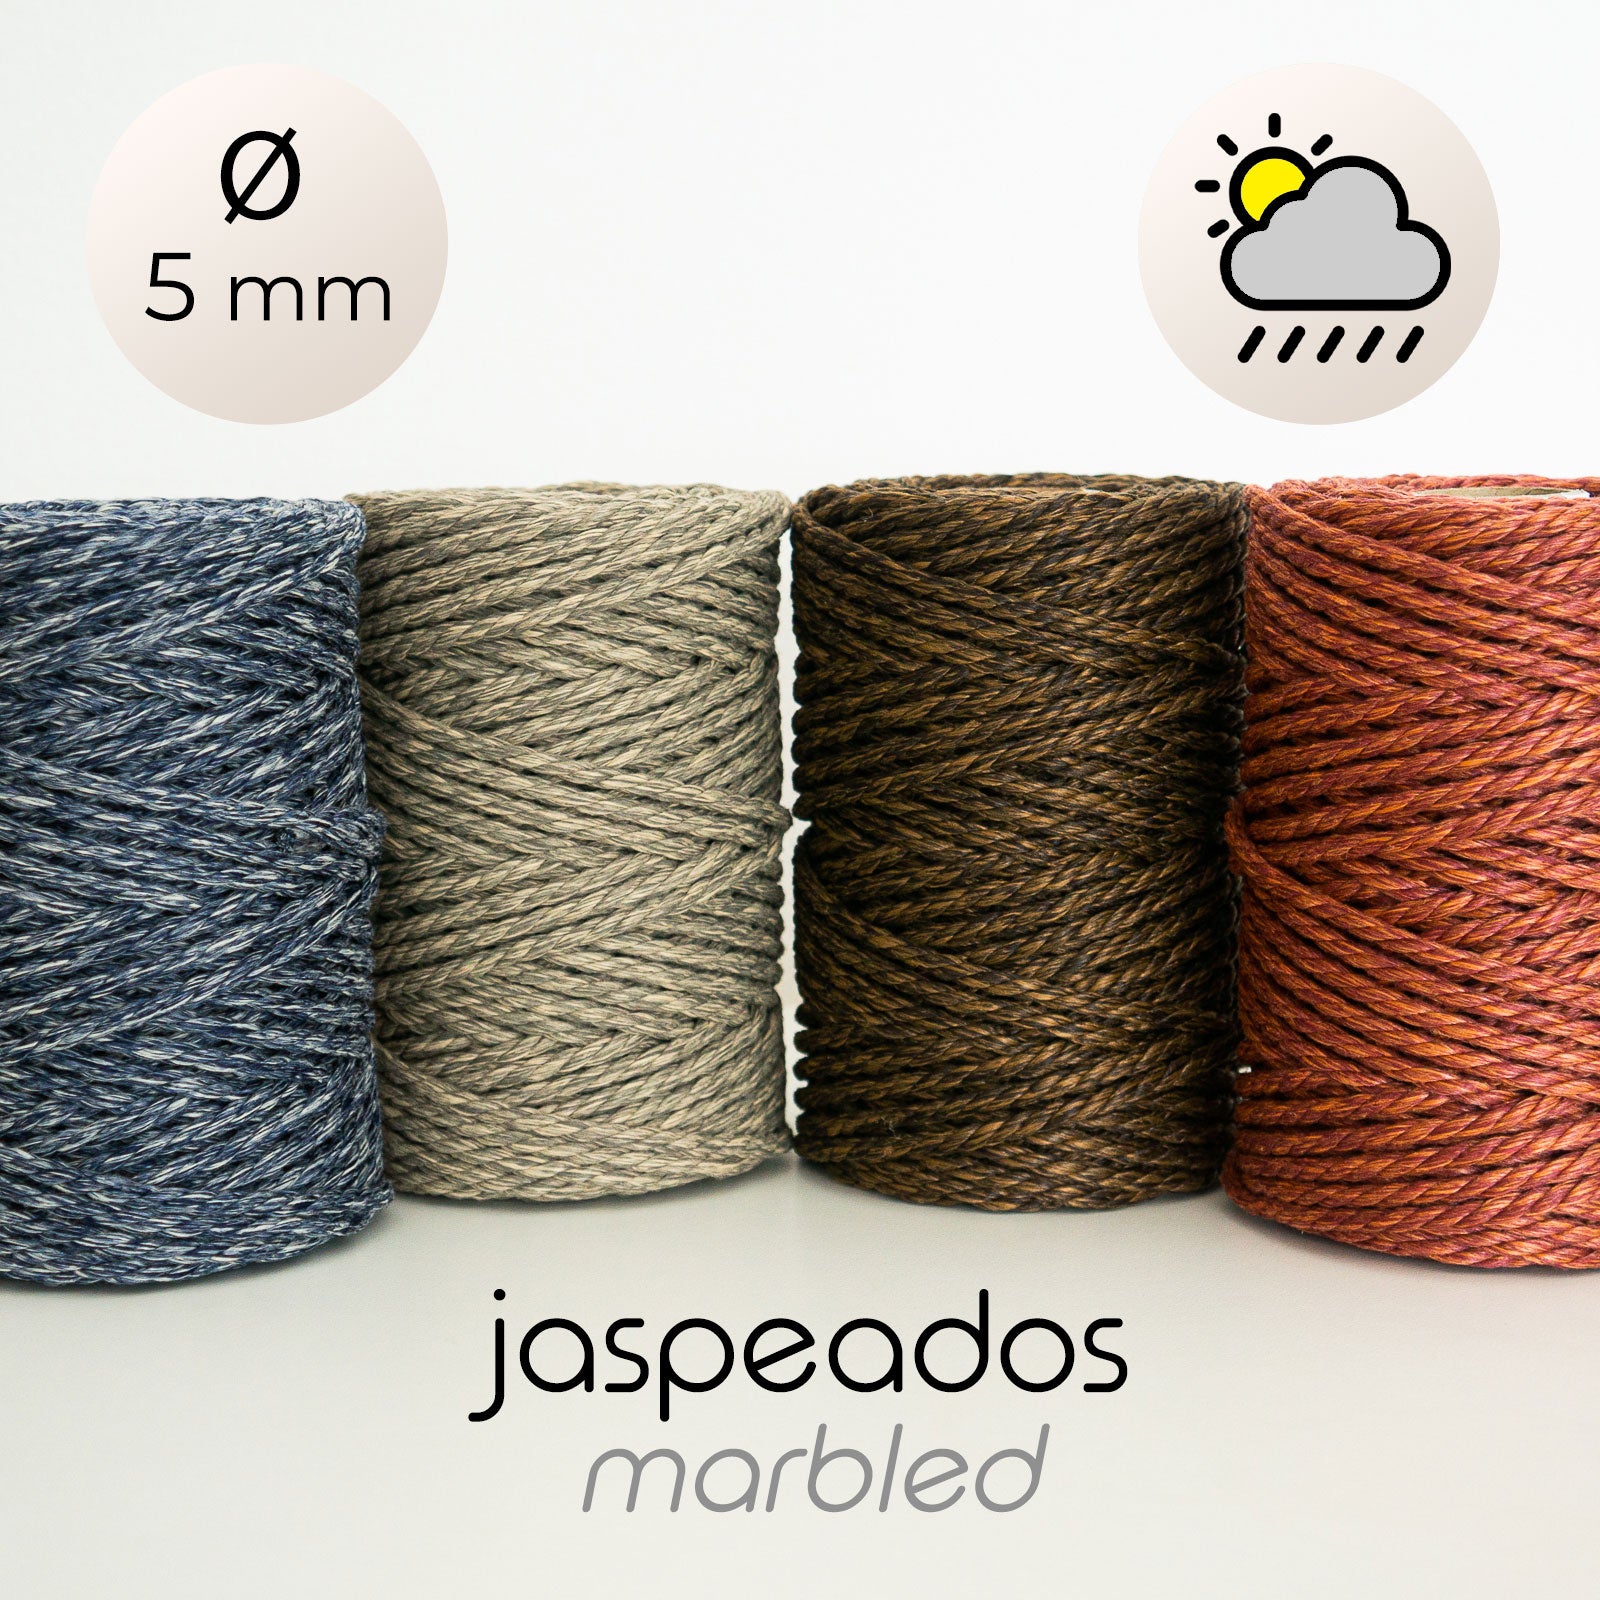 Macrame rope for the outdoors:sun, humidity and rain – Macranova